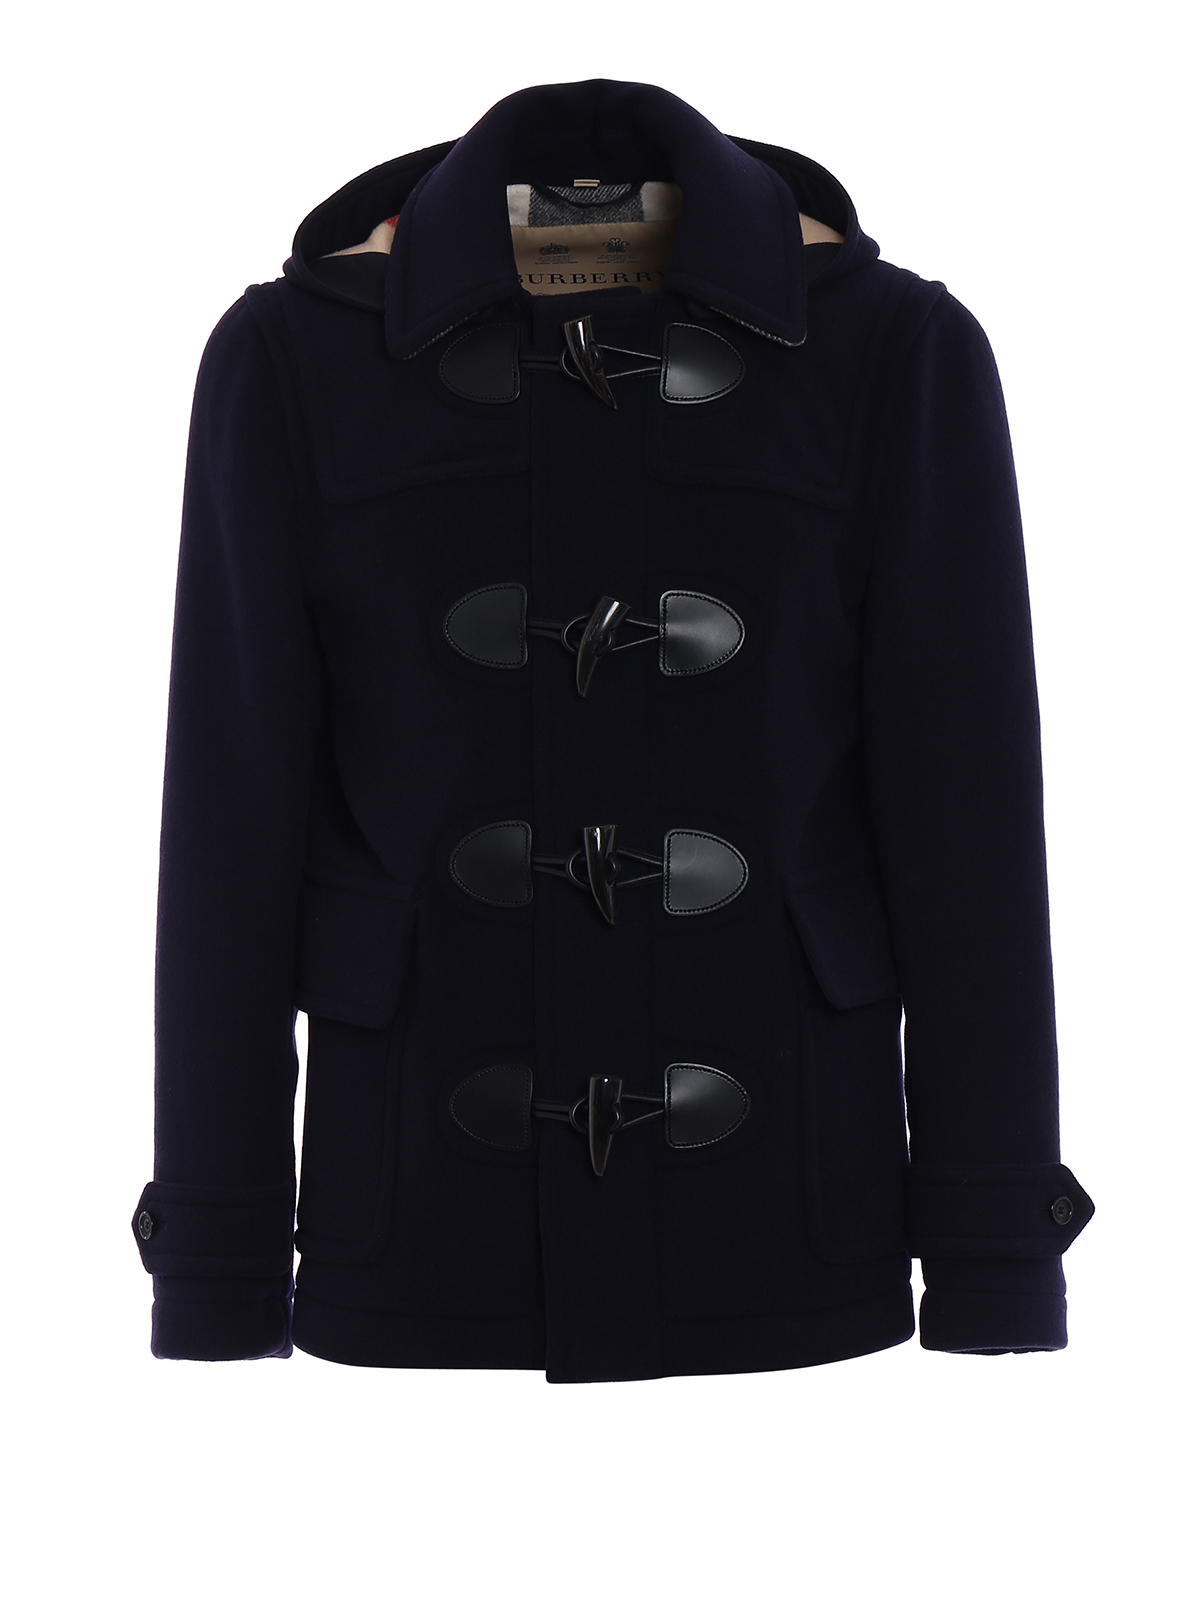 Plymouth navy duffle coat - short coats 